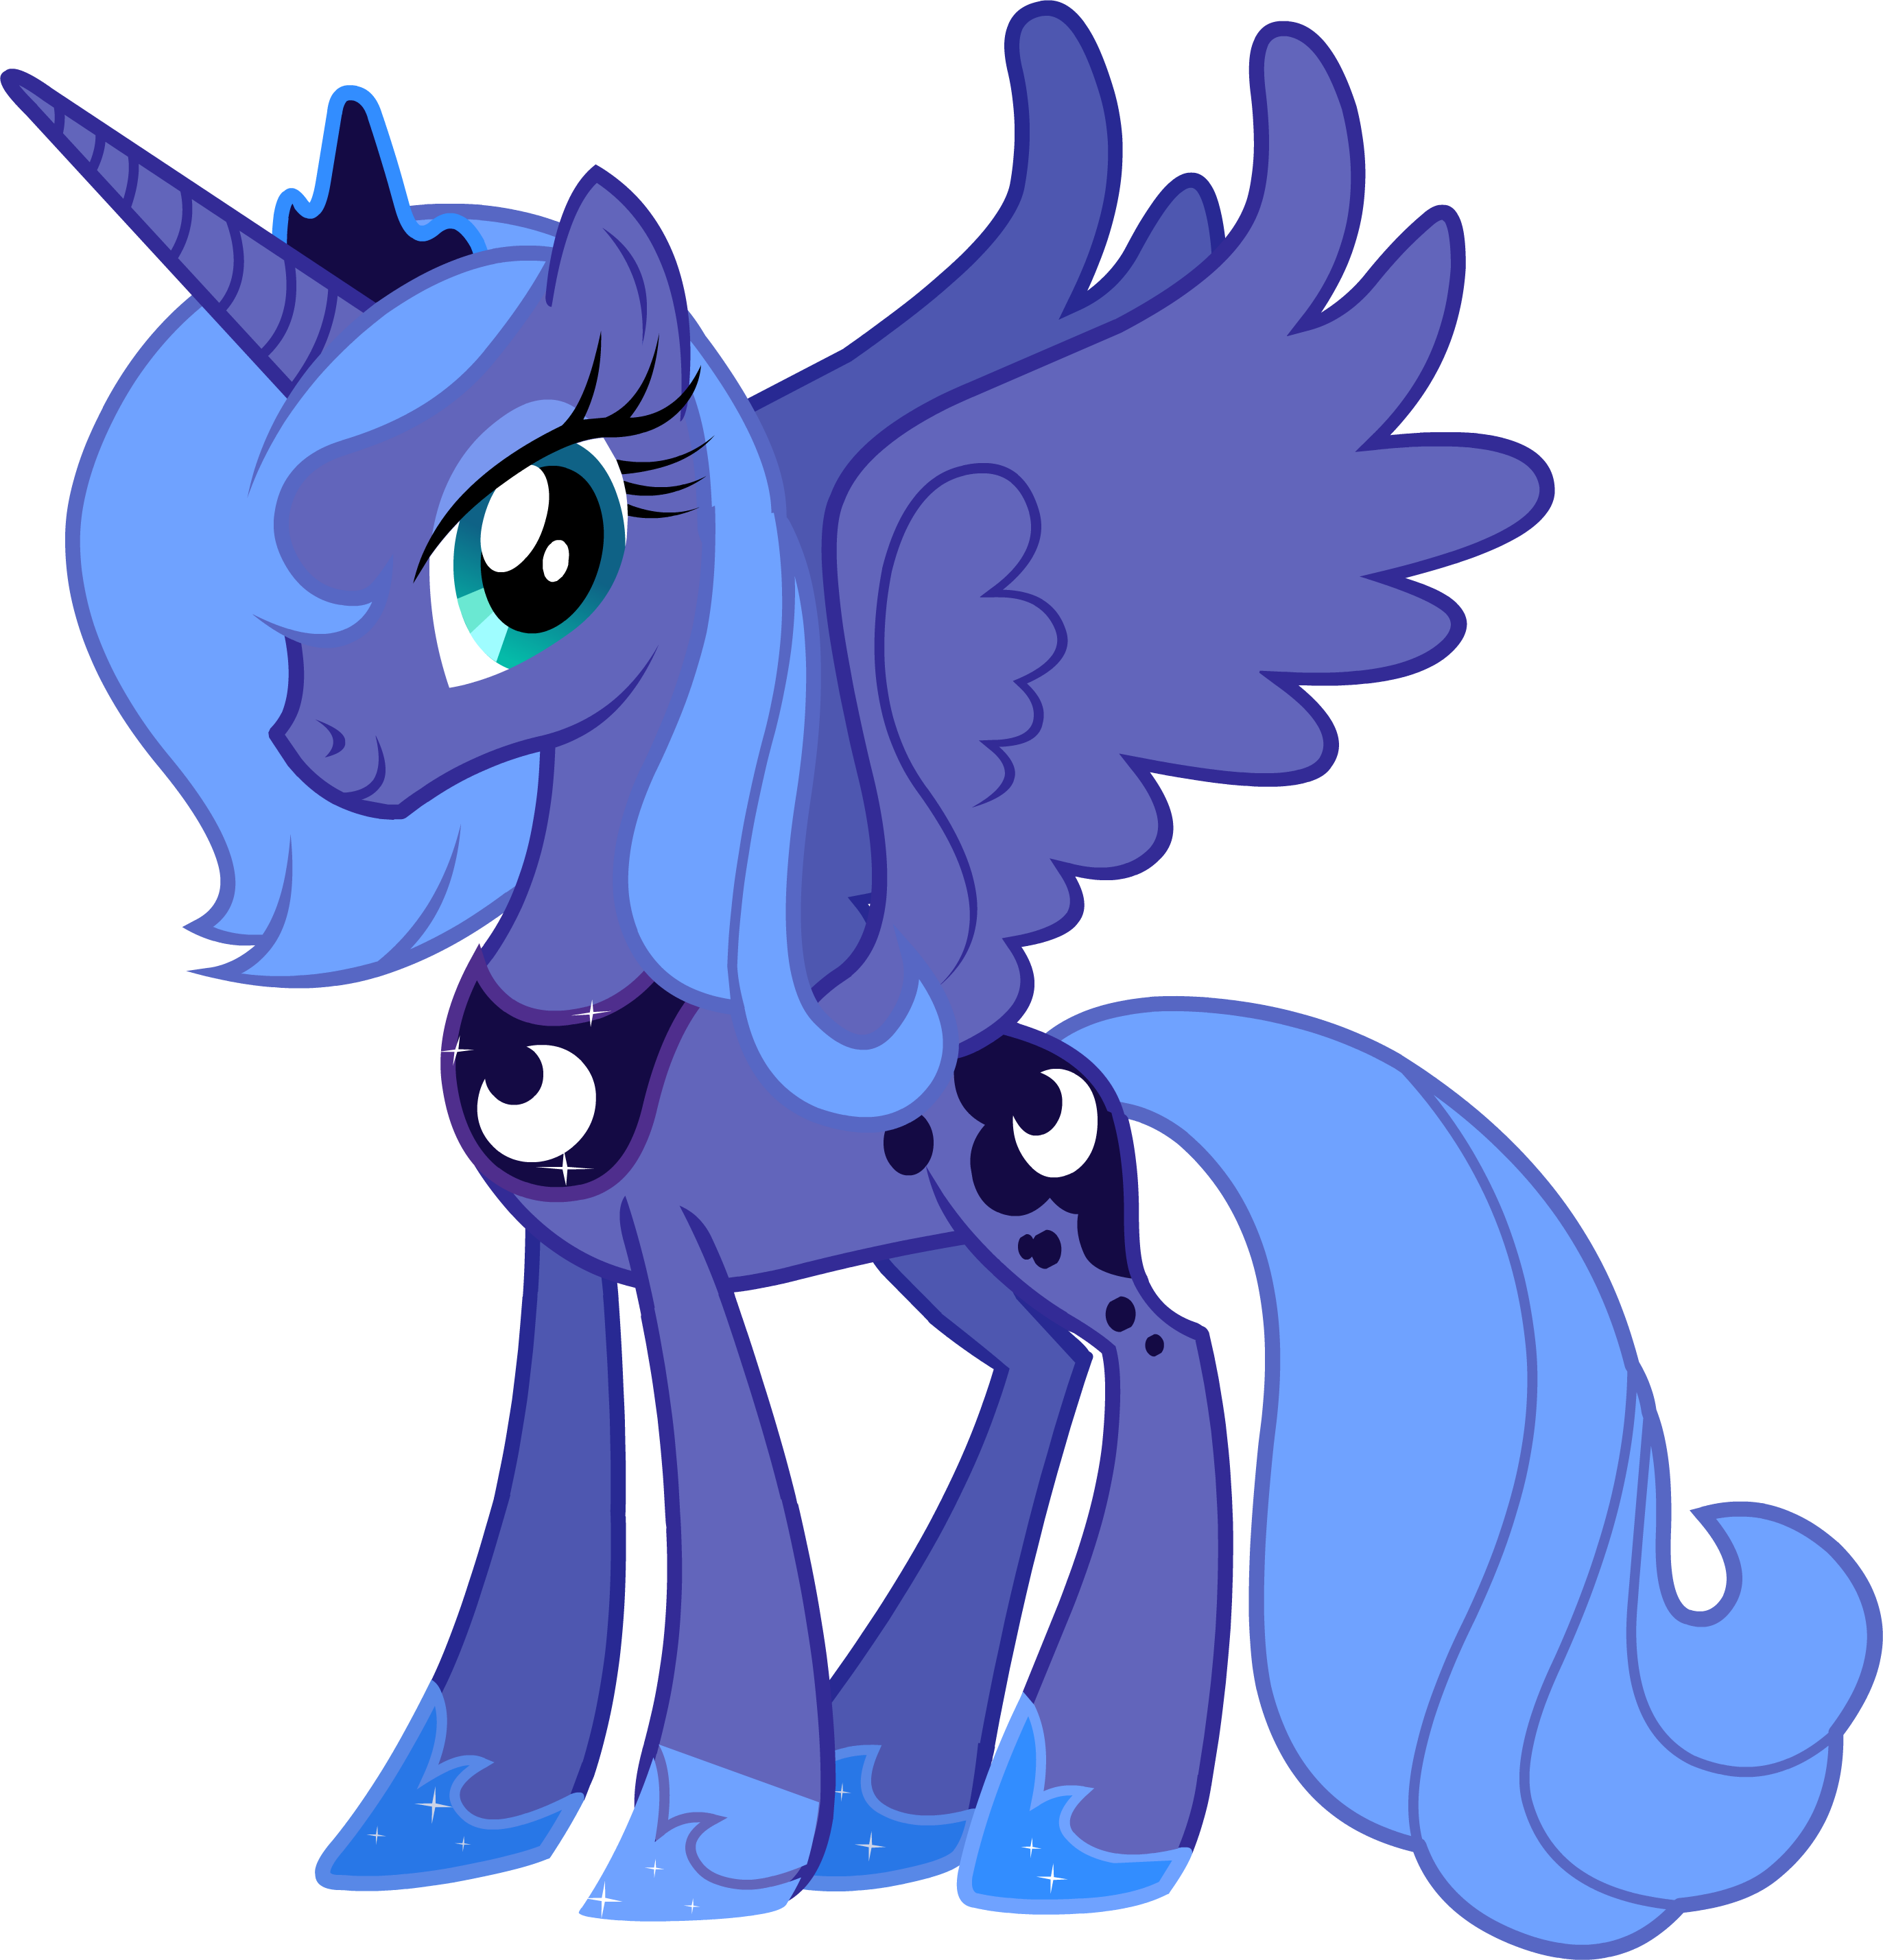 Литл пони лунная пони. Мой маленький пони принцесса Луна. Аликорн Луна. My little Pony Luna. My little Pony Princess Luna.